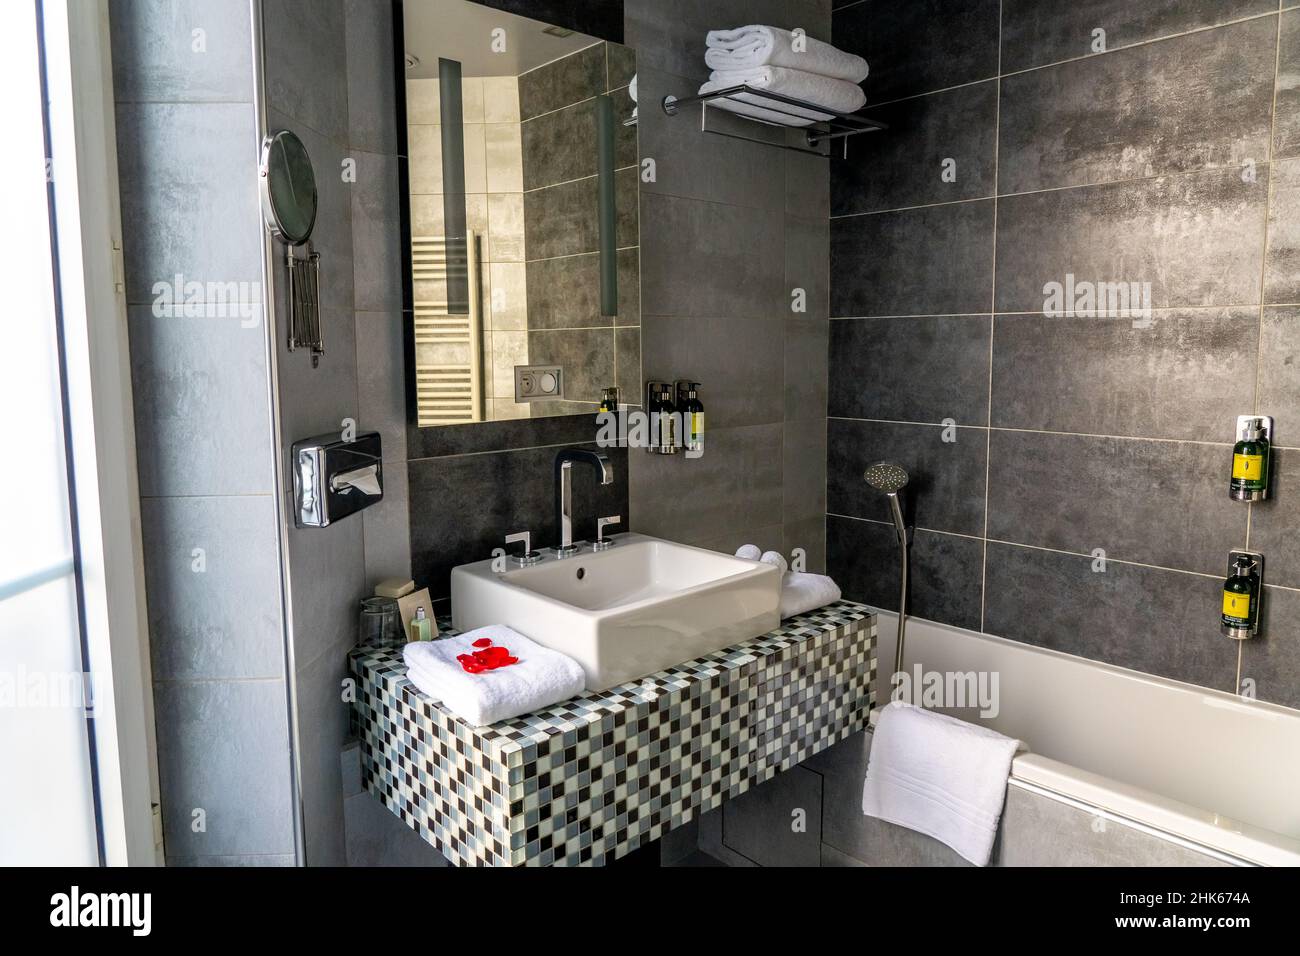 Paris, FRANCIA - 11.11.2021 - Cuarto de baño de lujo con ducha y decoración  en piedra blanca y negra. Lavabo blanco, inodoro y muebles. Primer plano  del producto de higiene del hotel